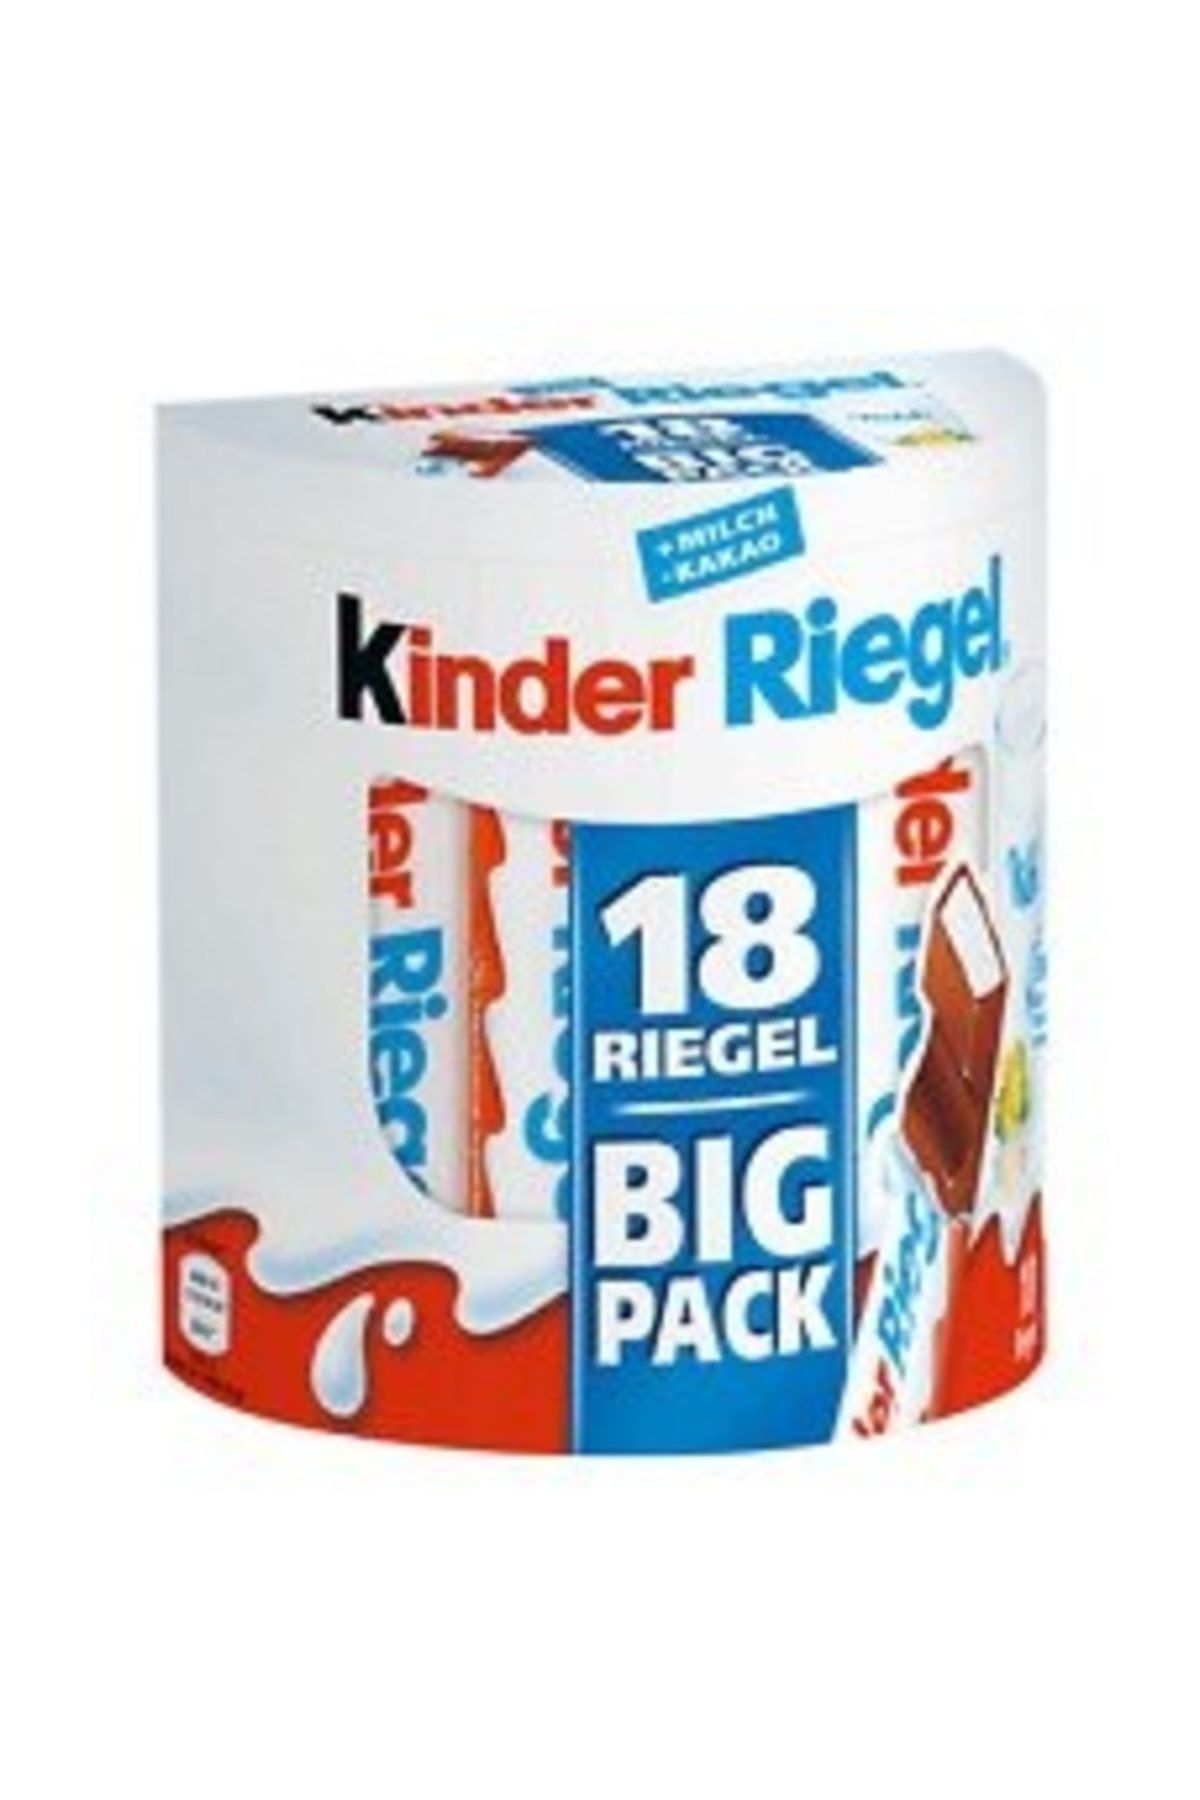 Ferrero Rocher Kinder Riegel 18 Rıegel Bıg Pack..